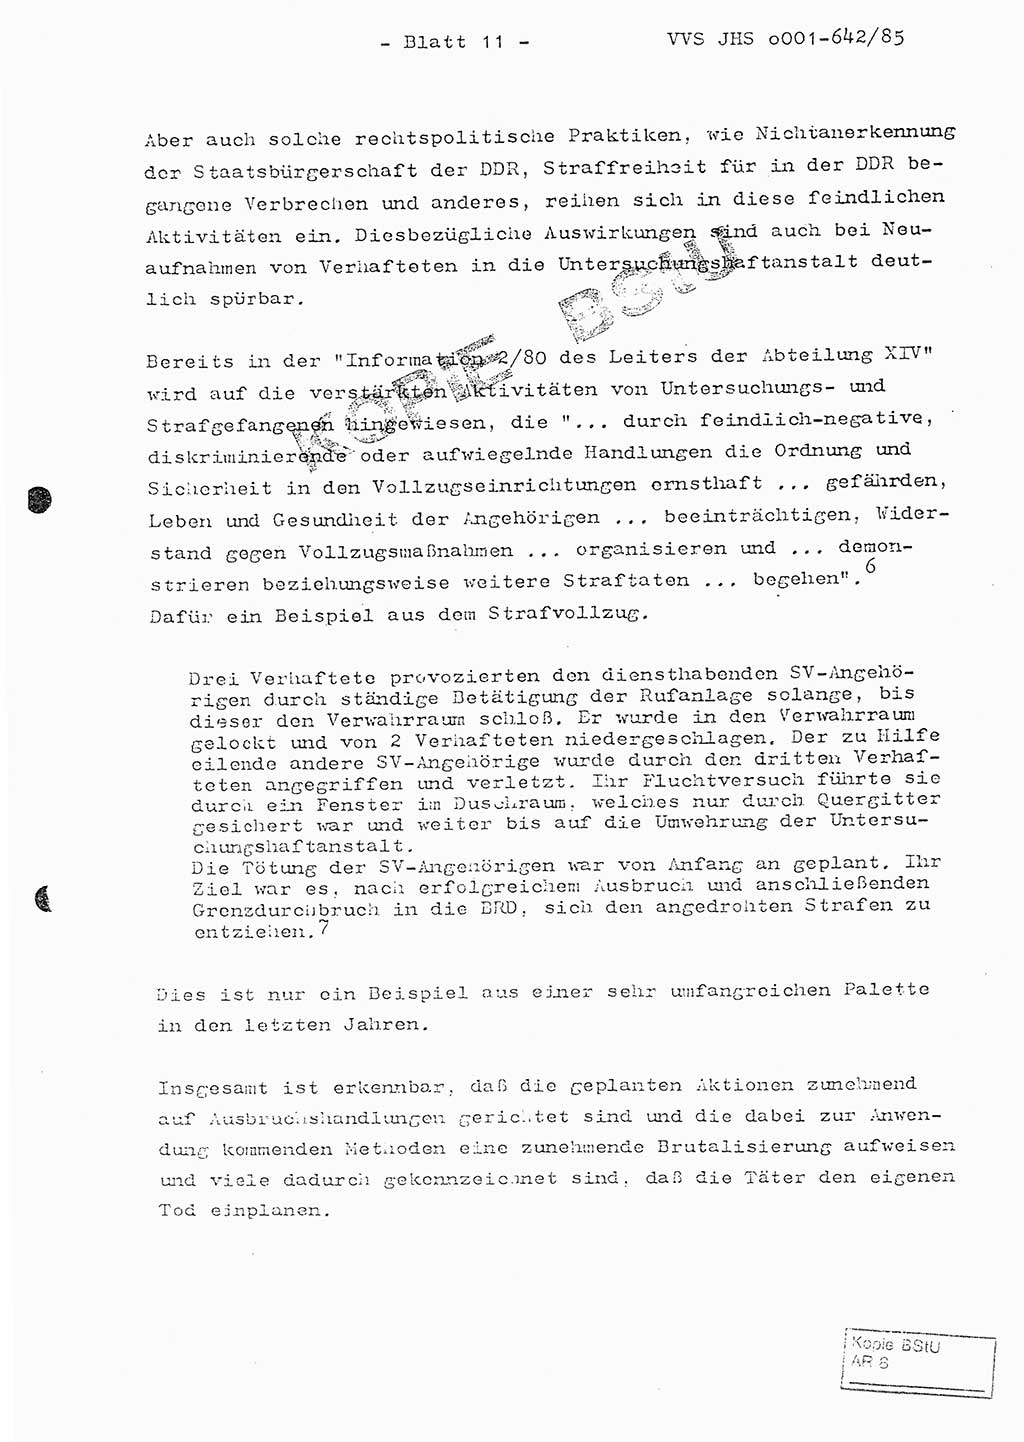 Fachschulabschlußarbeit Oberleutnant Lothar Fahland (Abt. ⅩⅣ), Ministerium für Staatssicherheit (MfS) [Deutsche Demokratische Republik (DDR)], Juristische Hochschule (JHS), Vertrauliche Verschlußsache (VVS) o001-642/85, Potsdam 1985, Blatt 11 (FS-Abschl.-Arb. MfS DDR JHS VVS o001-642/85 1985, Bl. 11)